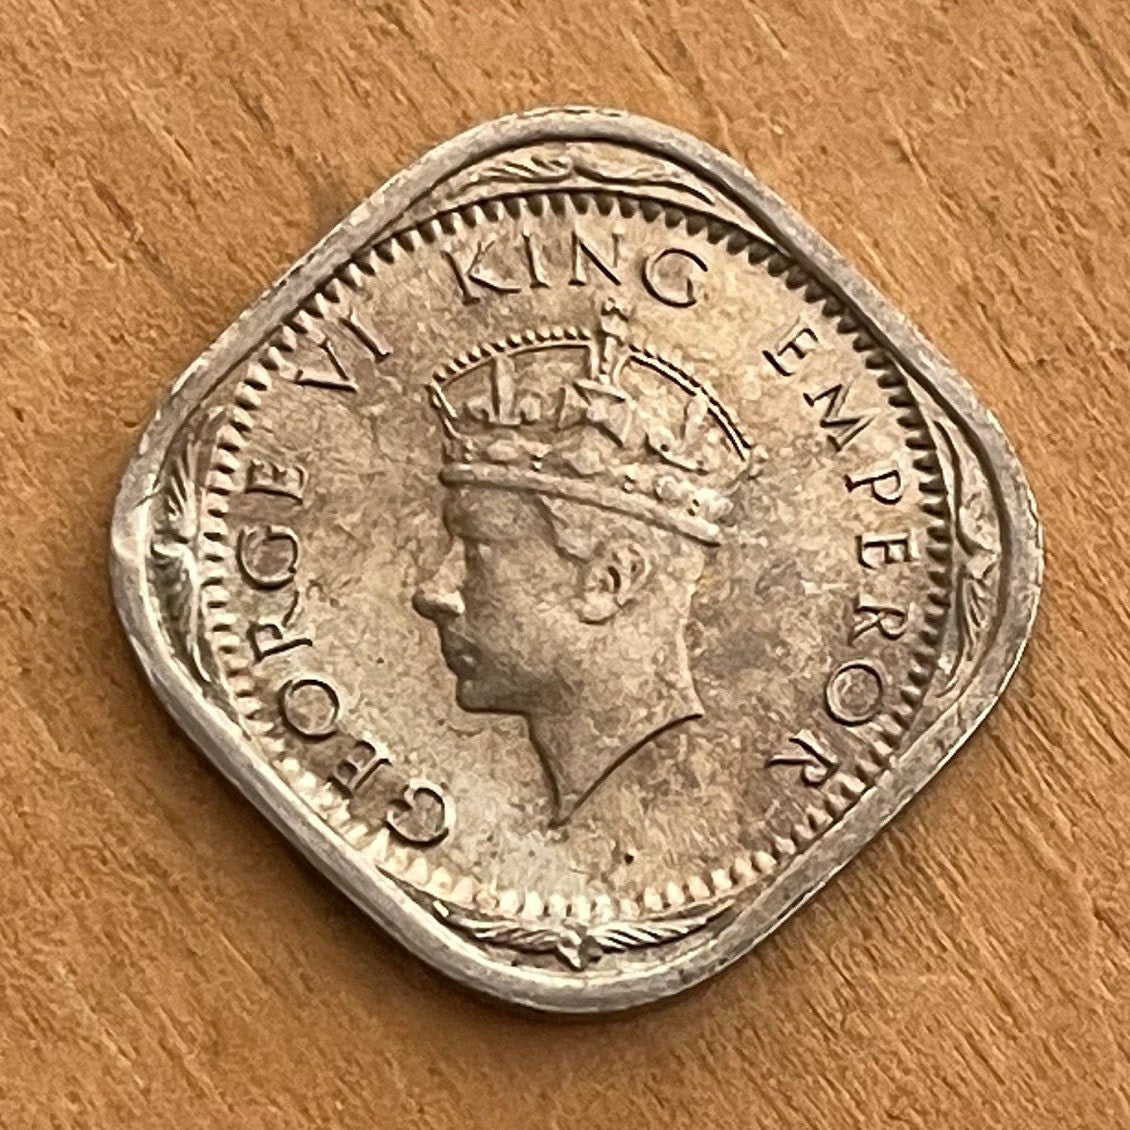 Two Annas & George VI King Emperor British India Authentic Coin Money for Jewelry (British Raj) (Emperor of India) (Quadrilingual) (Square)